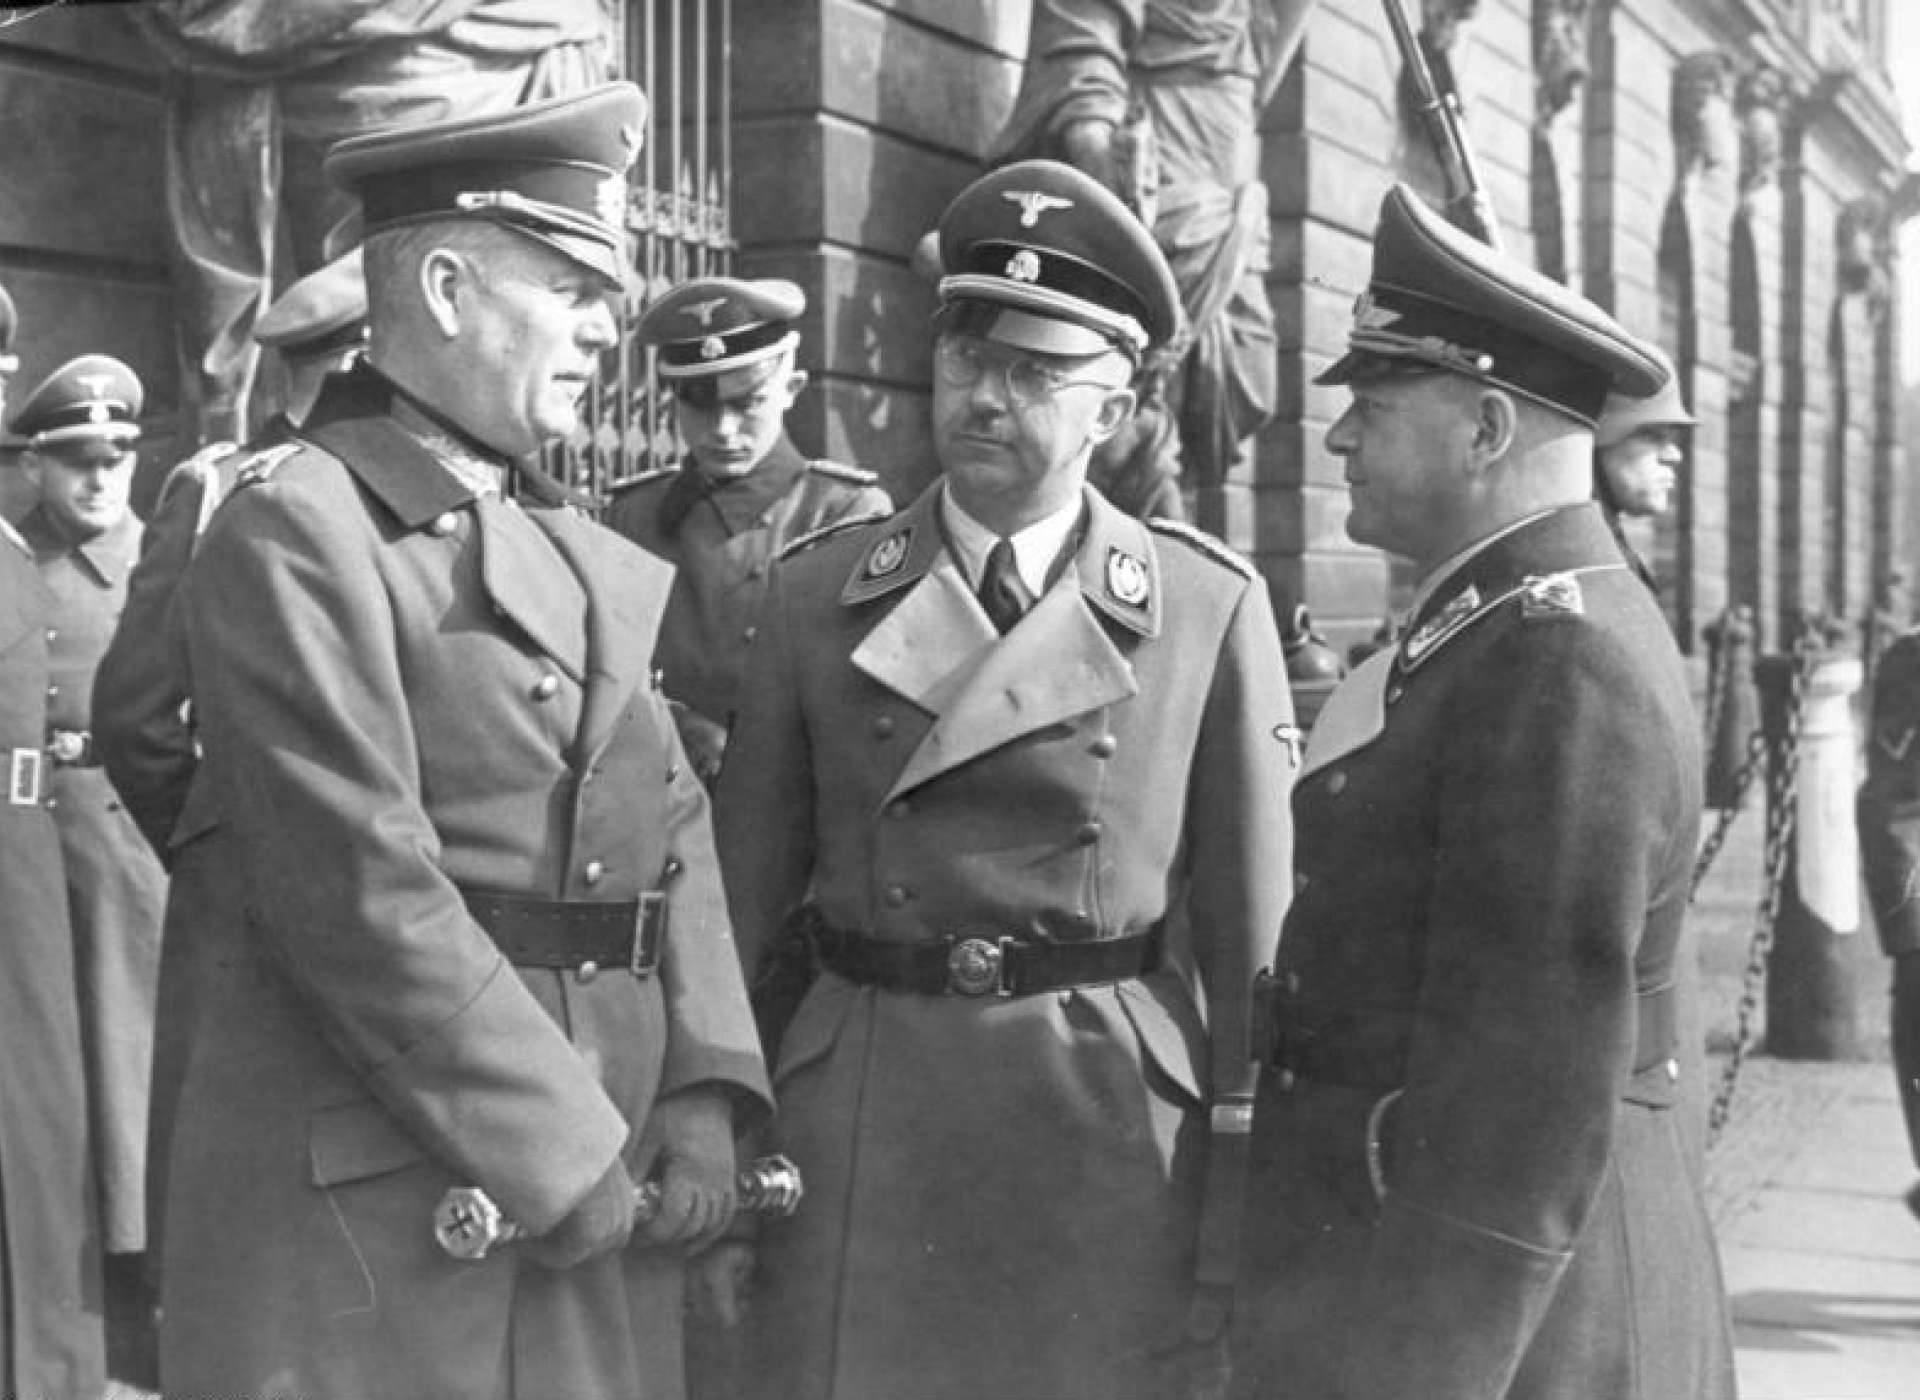 Wilhelm Keitel, Heinrich Himmler, and Erhard Milch